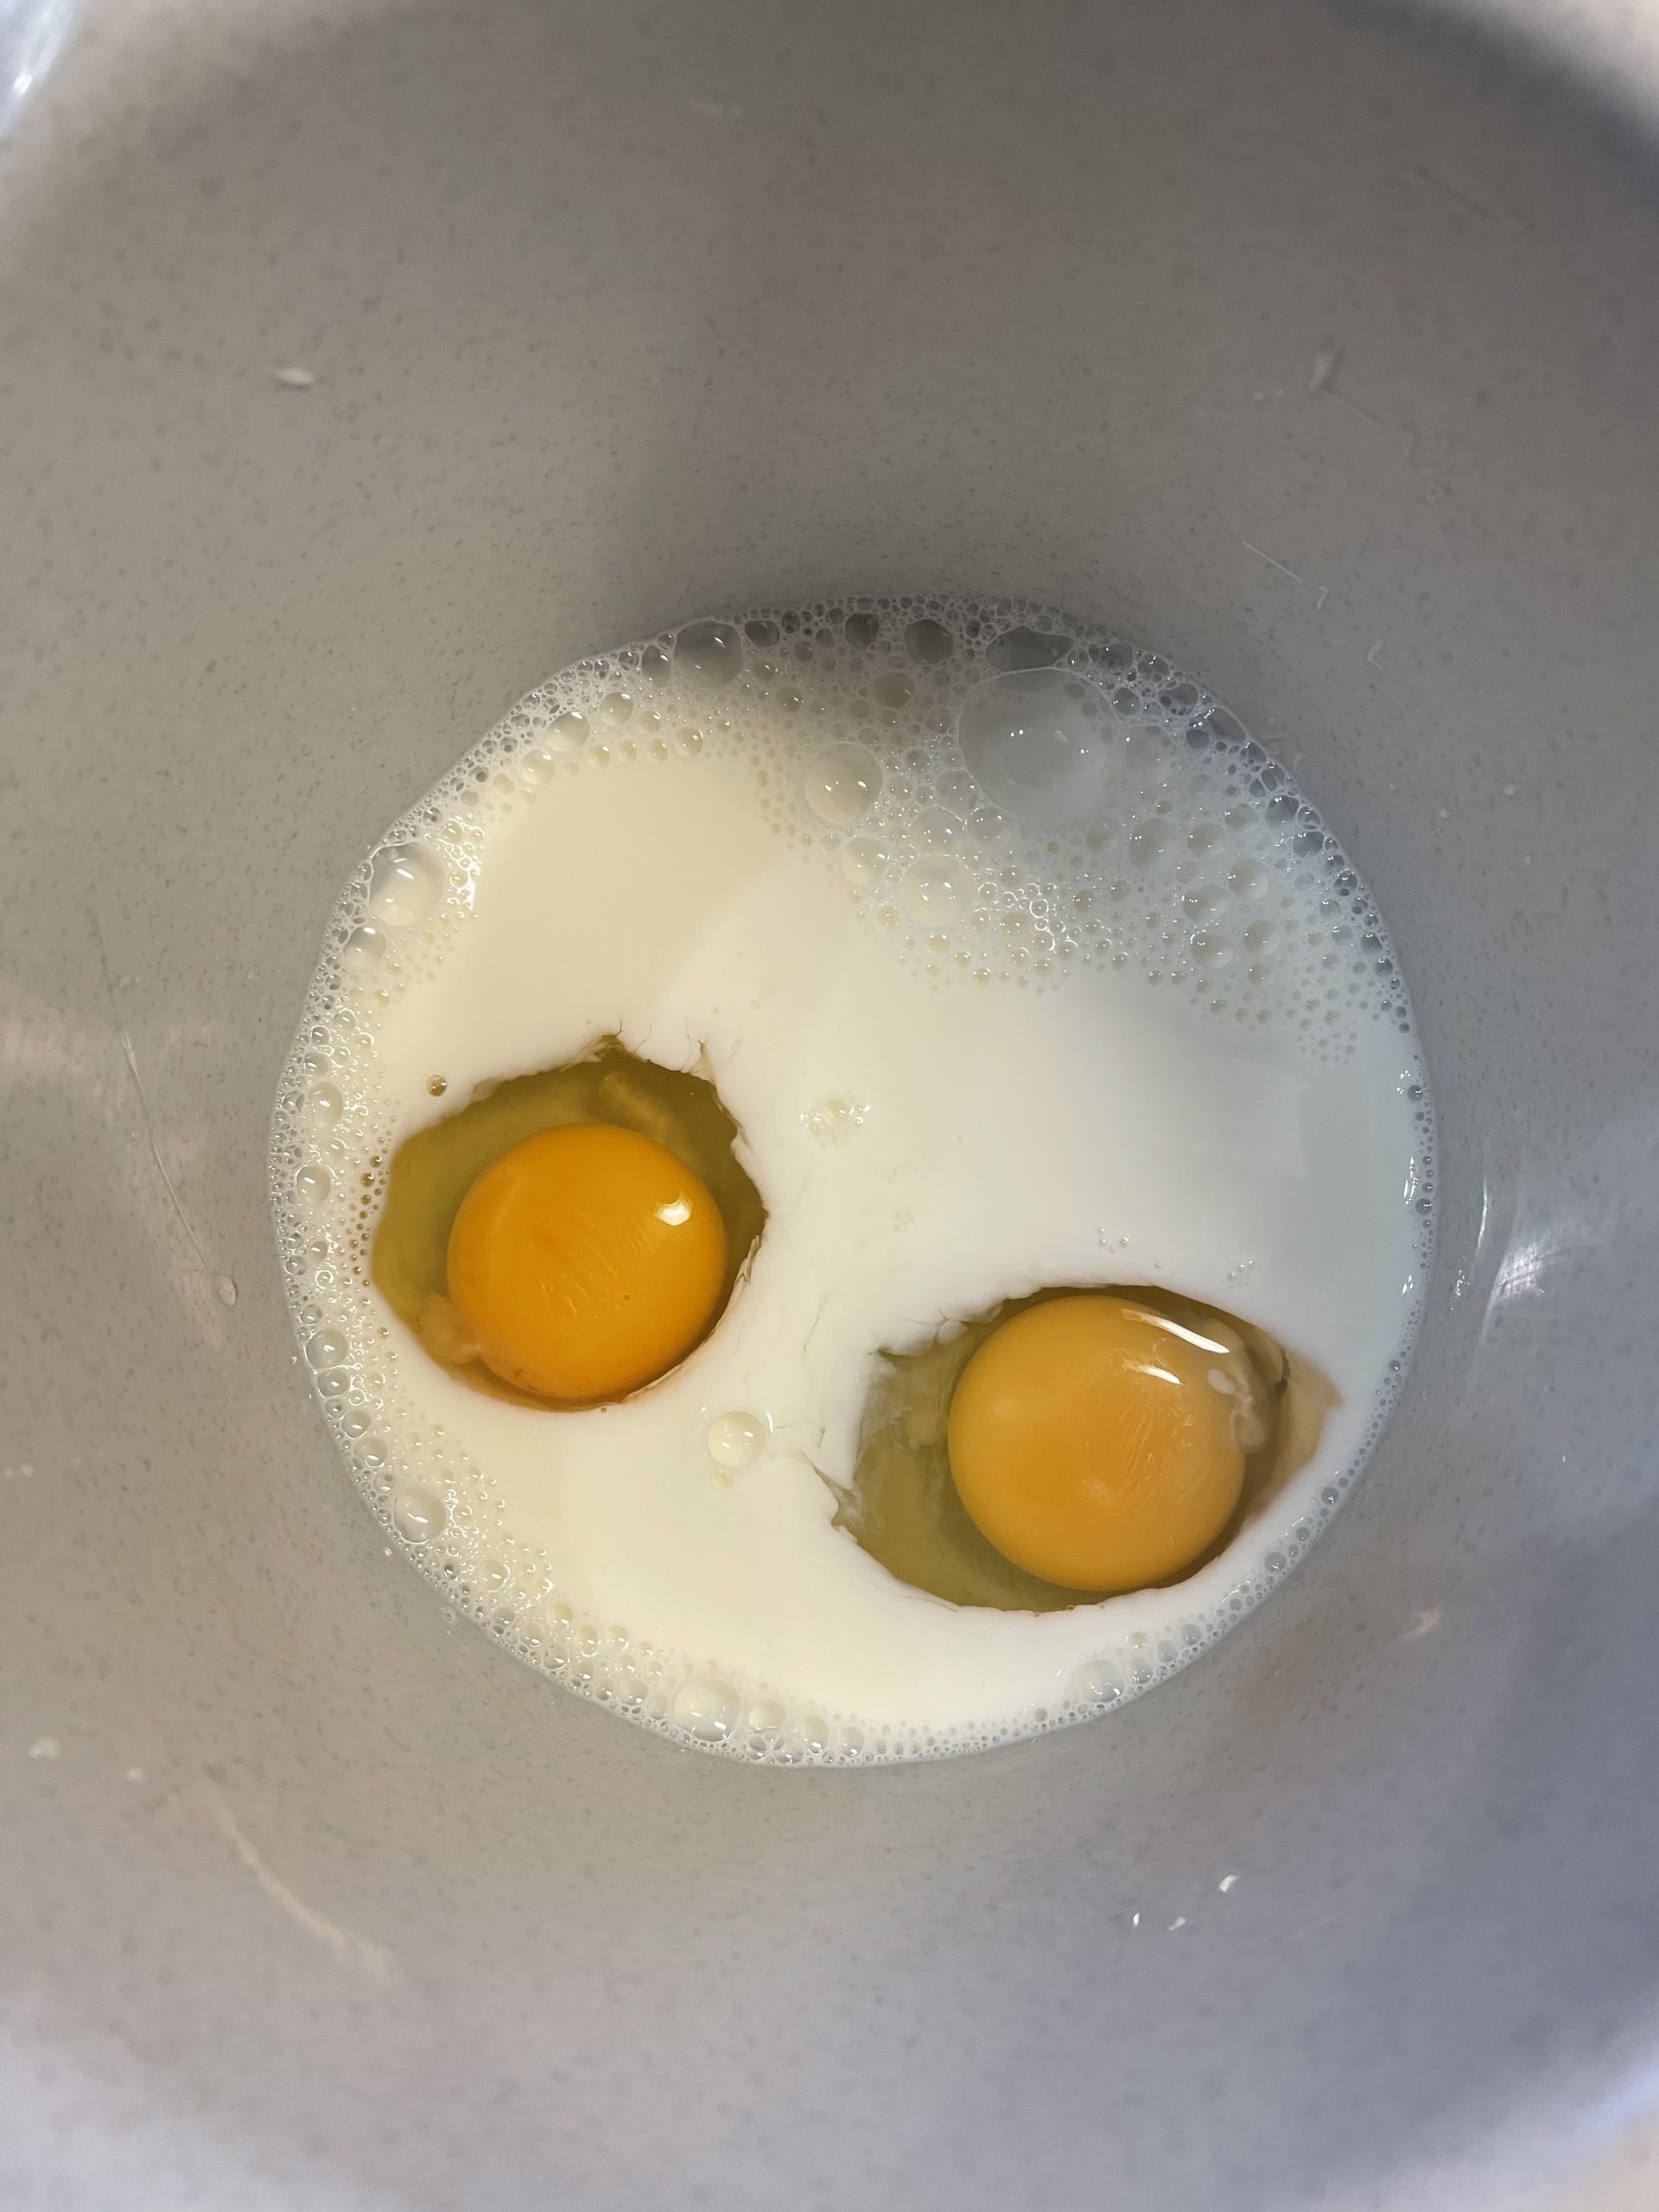 Bild zum Schritt 2 für das Bastel- und DIY-Abenteuer für Kinder: 'Zuerst gebt ihr Eier und Milch in die Rührschüssel. ...'